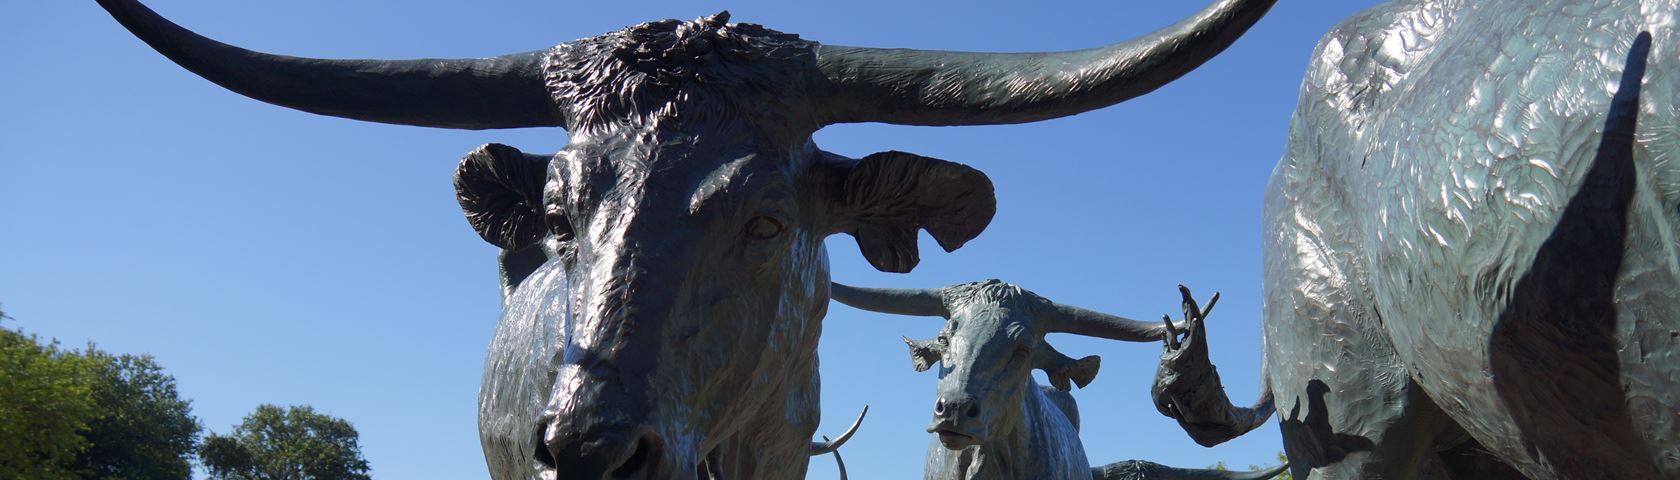 Longhorn Cattle in Pioneer Plaza